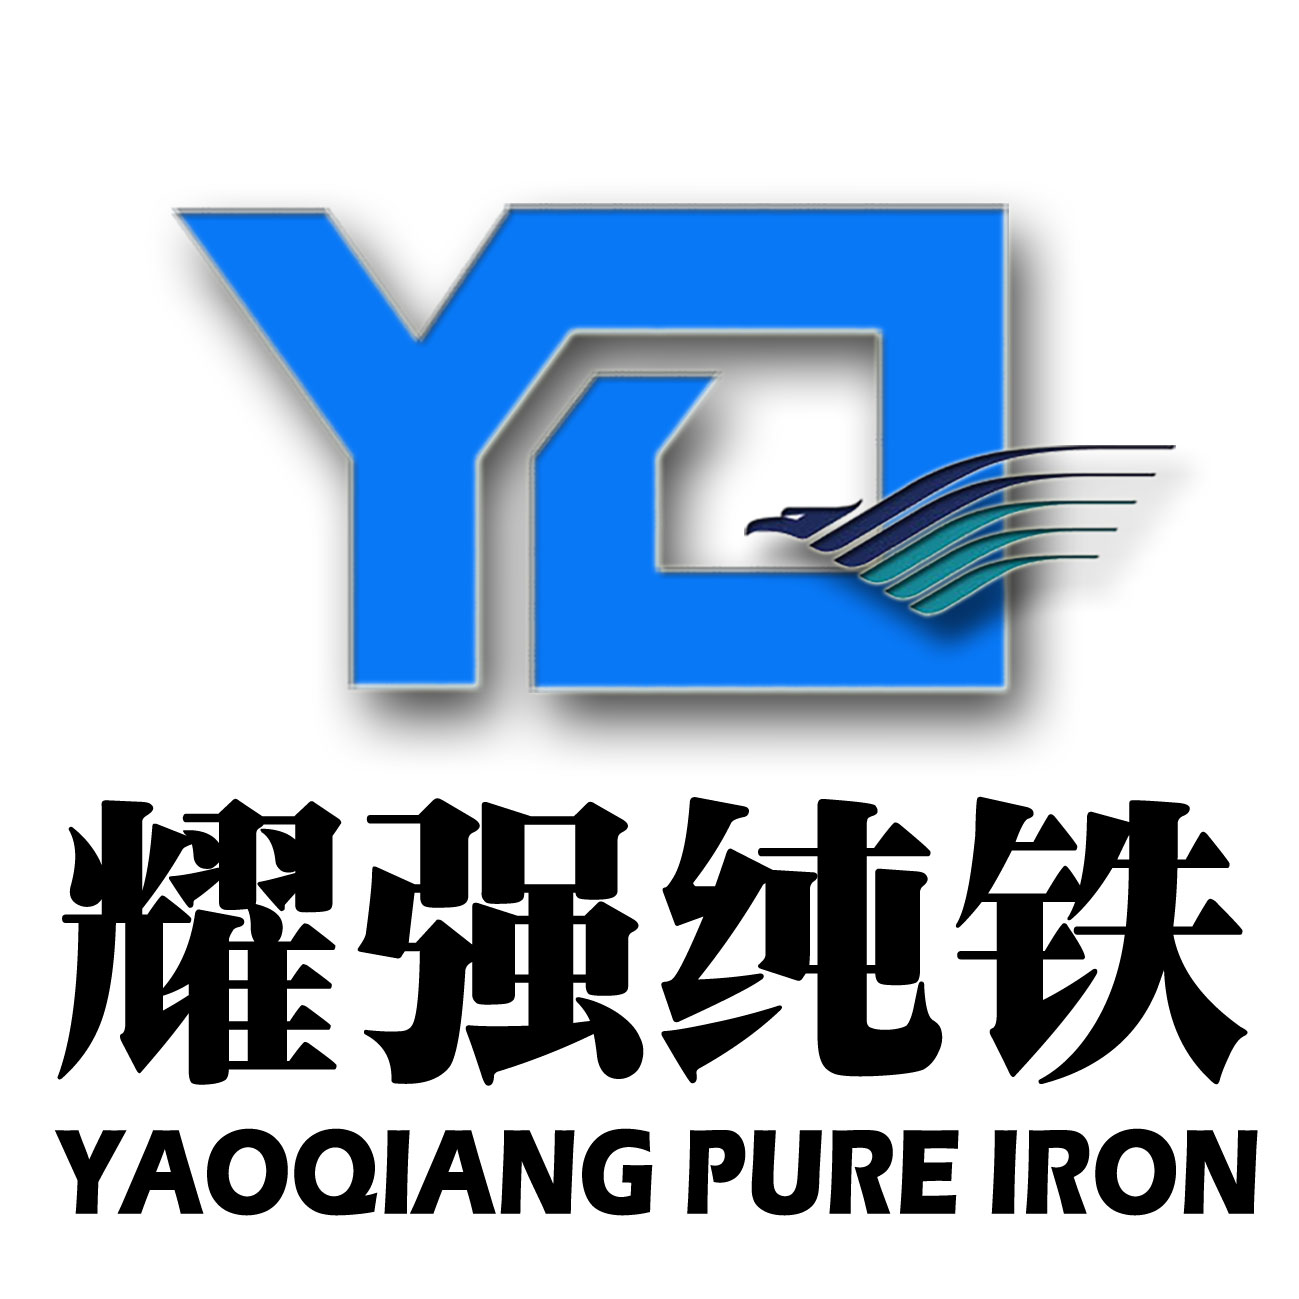 高纯度低碳铸造纯铁YT01